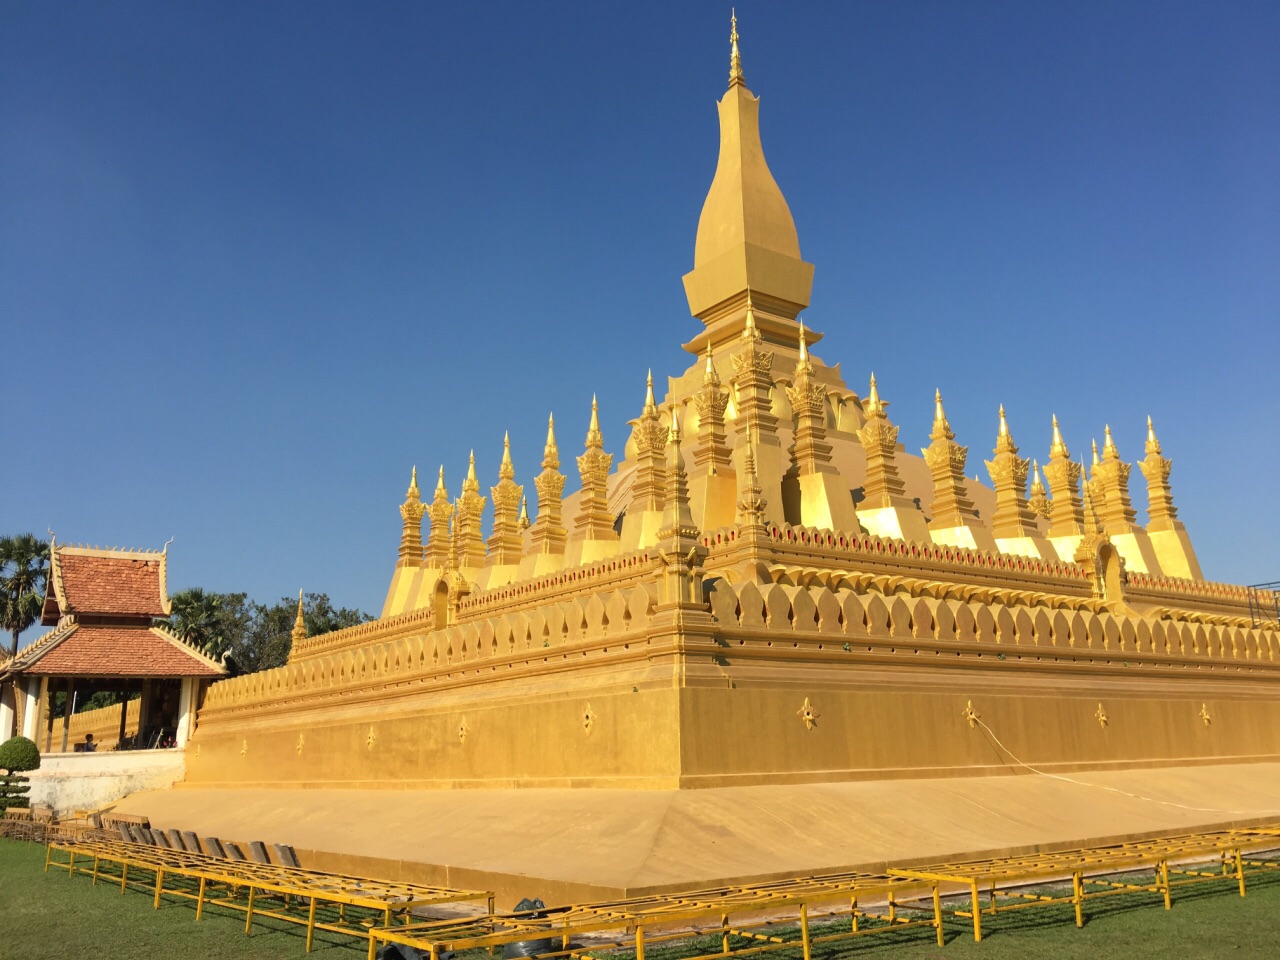 老挝国徽上有大佛塔主塔,万象标志性的建筑之一,大金塔在蓝天下挺